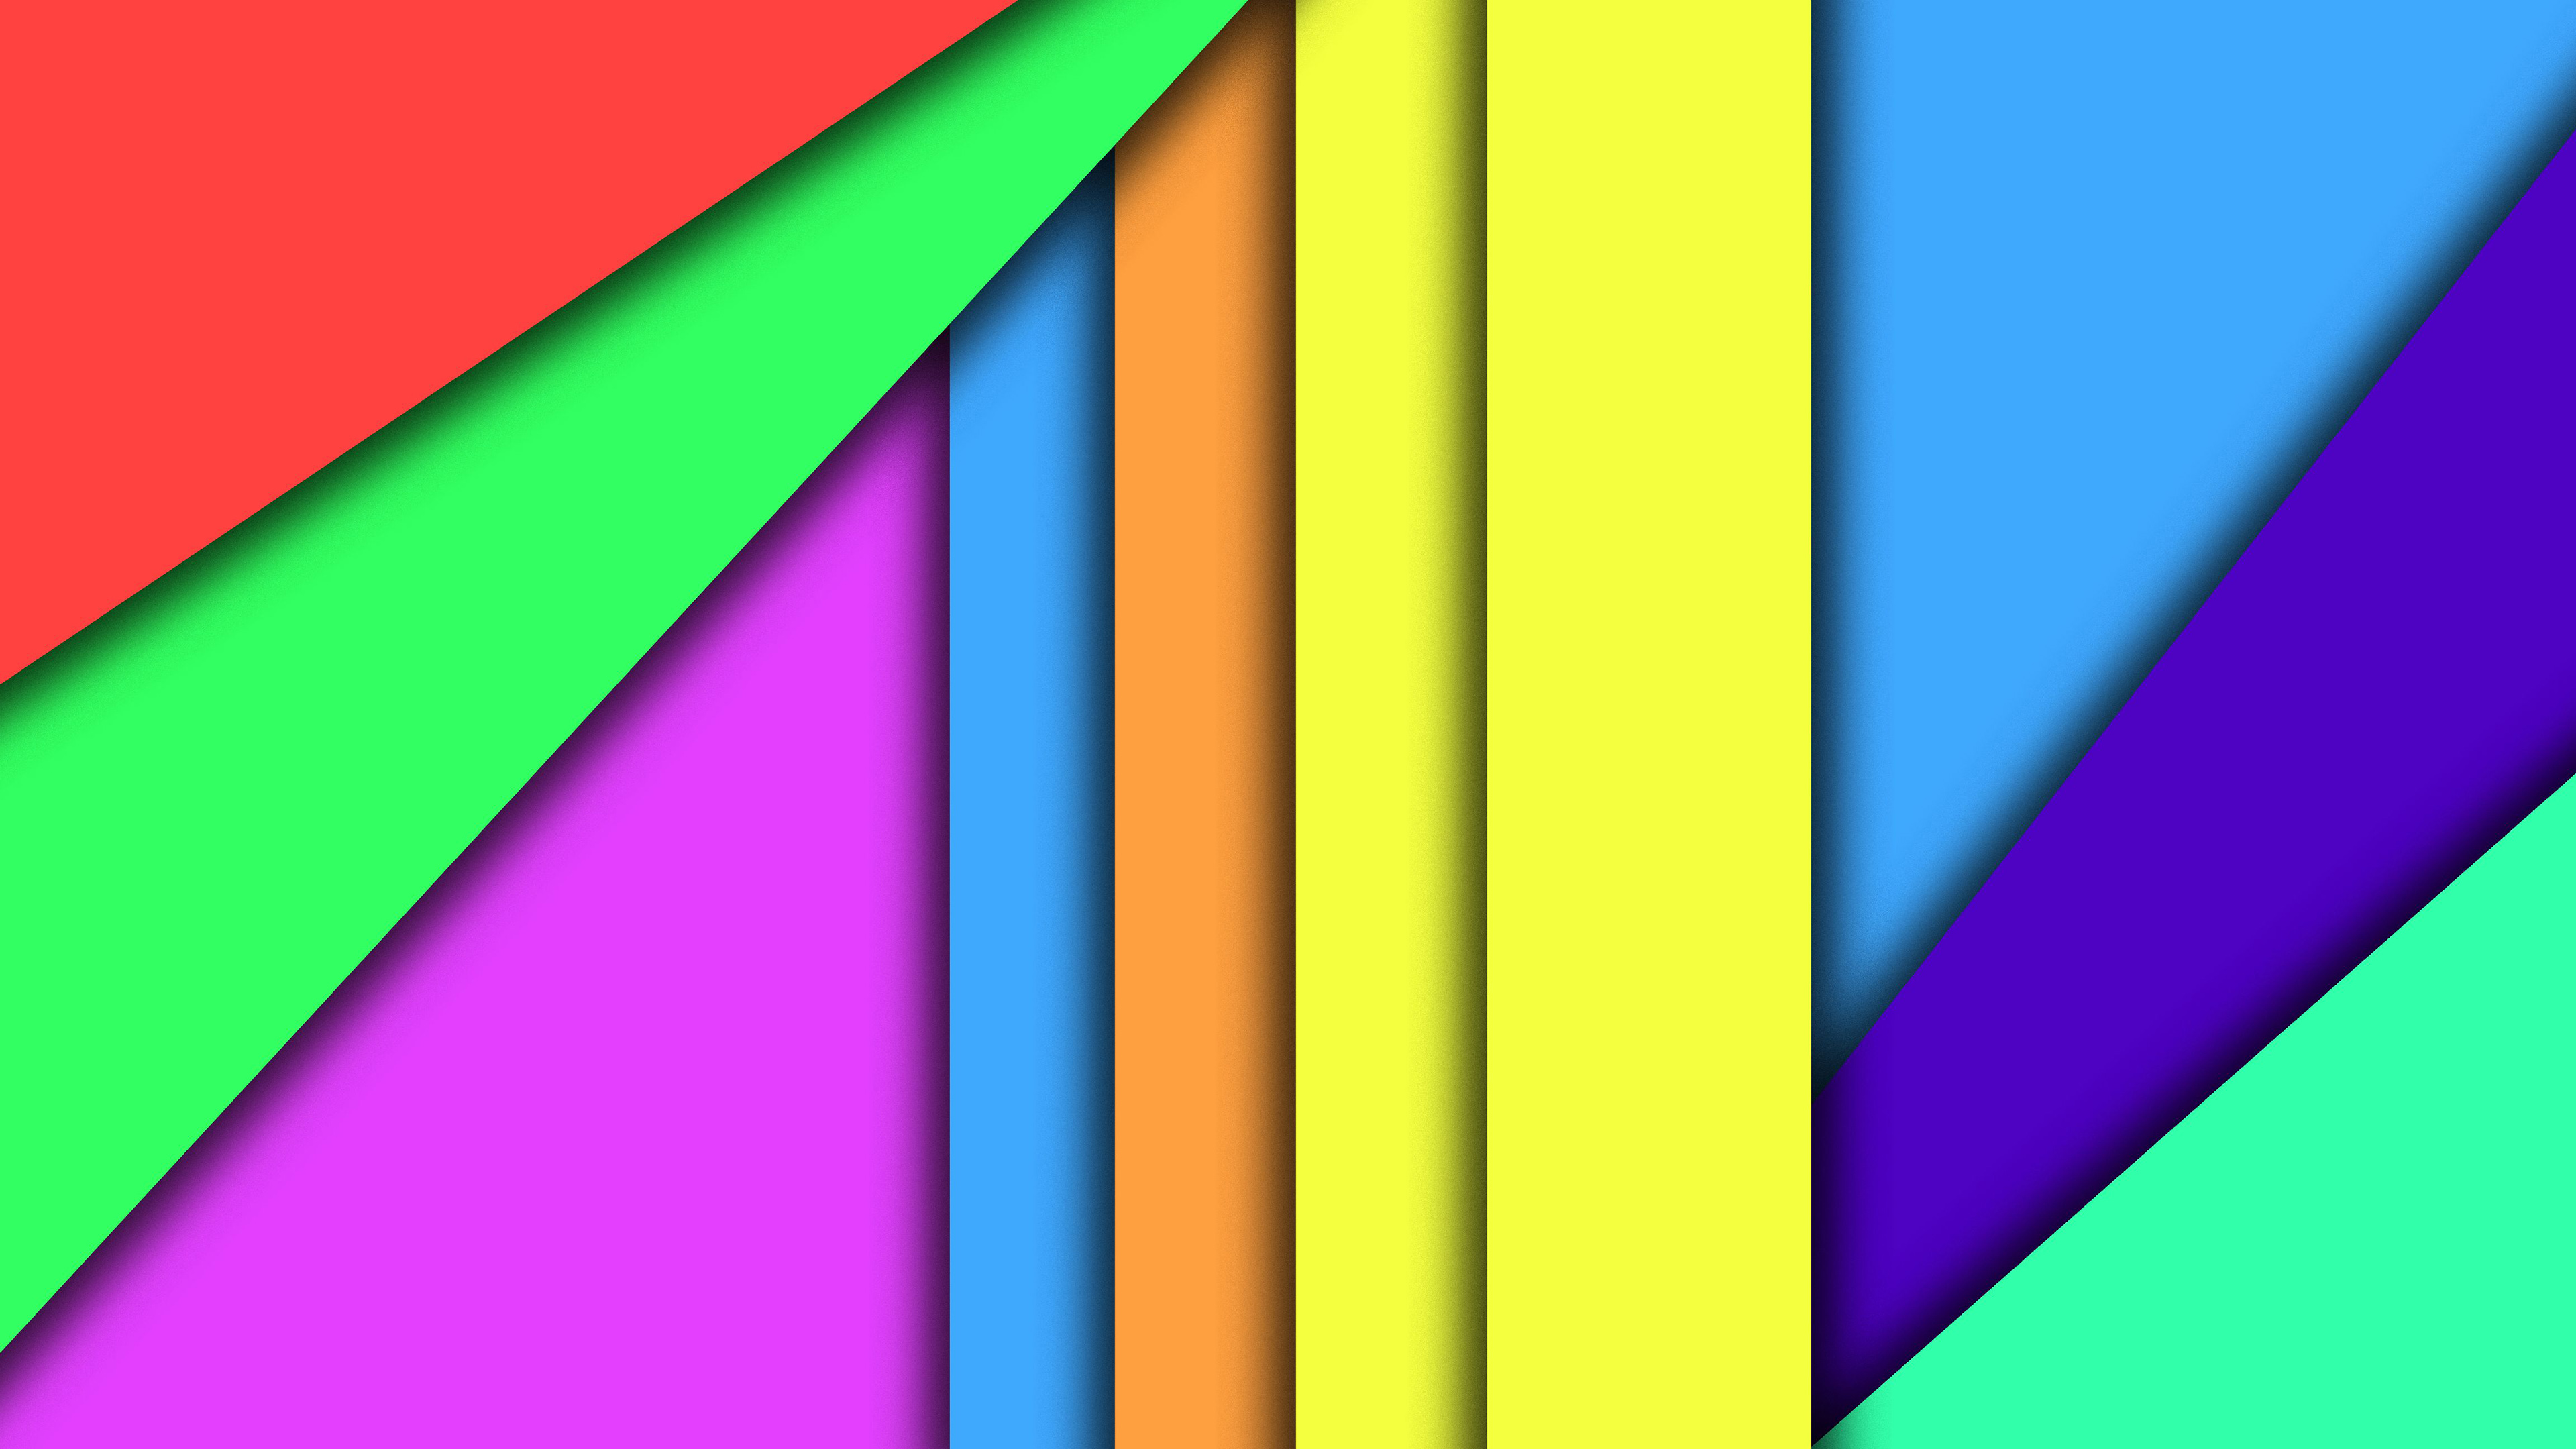 Colors Of Material Design 4k Wallpaper